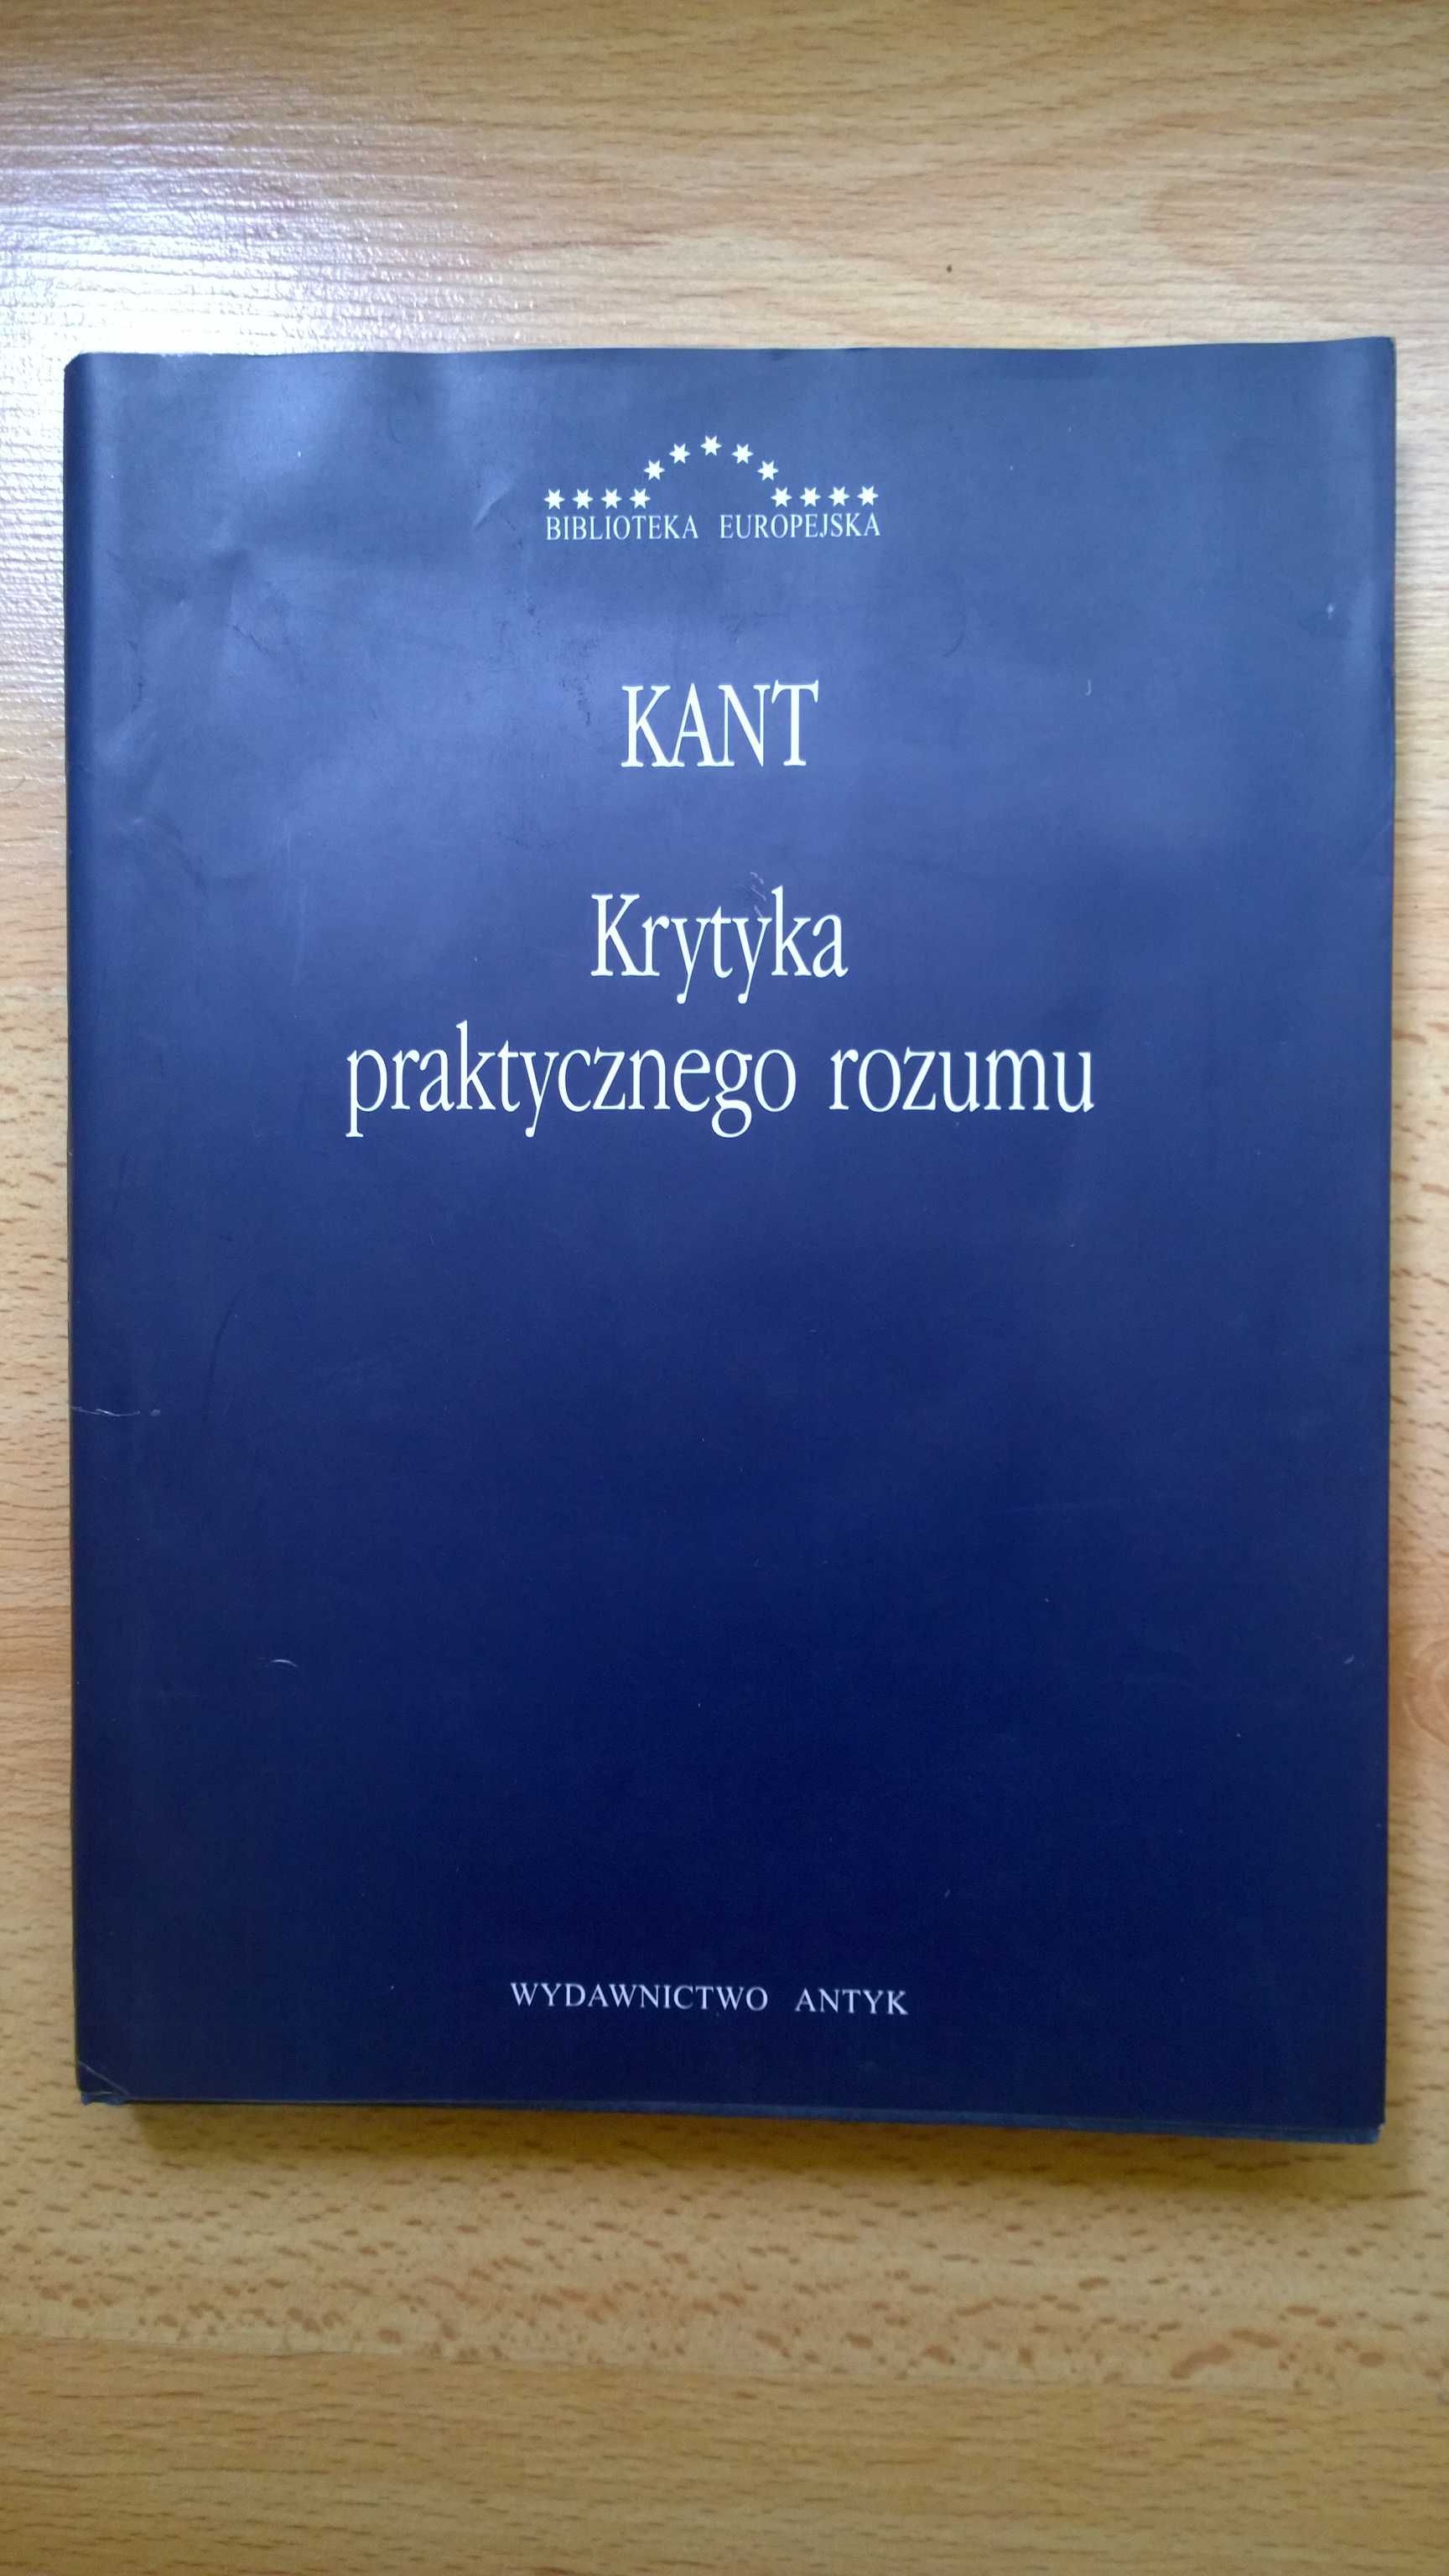 Krytyka praktycznego rozumu, Kant